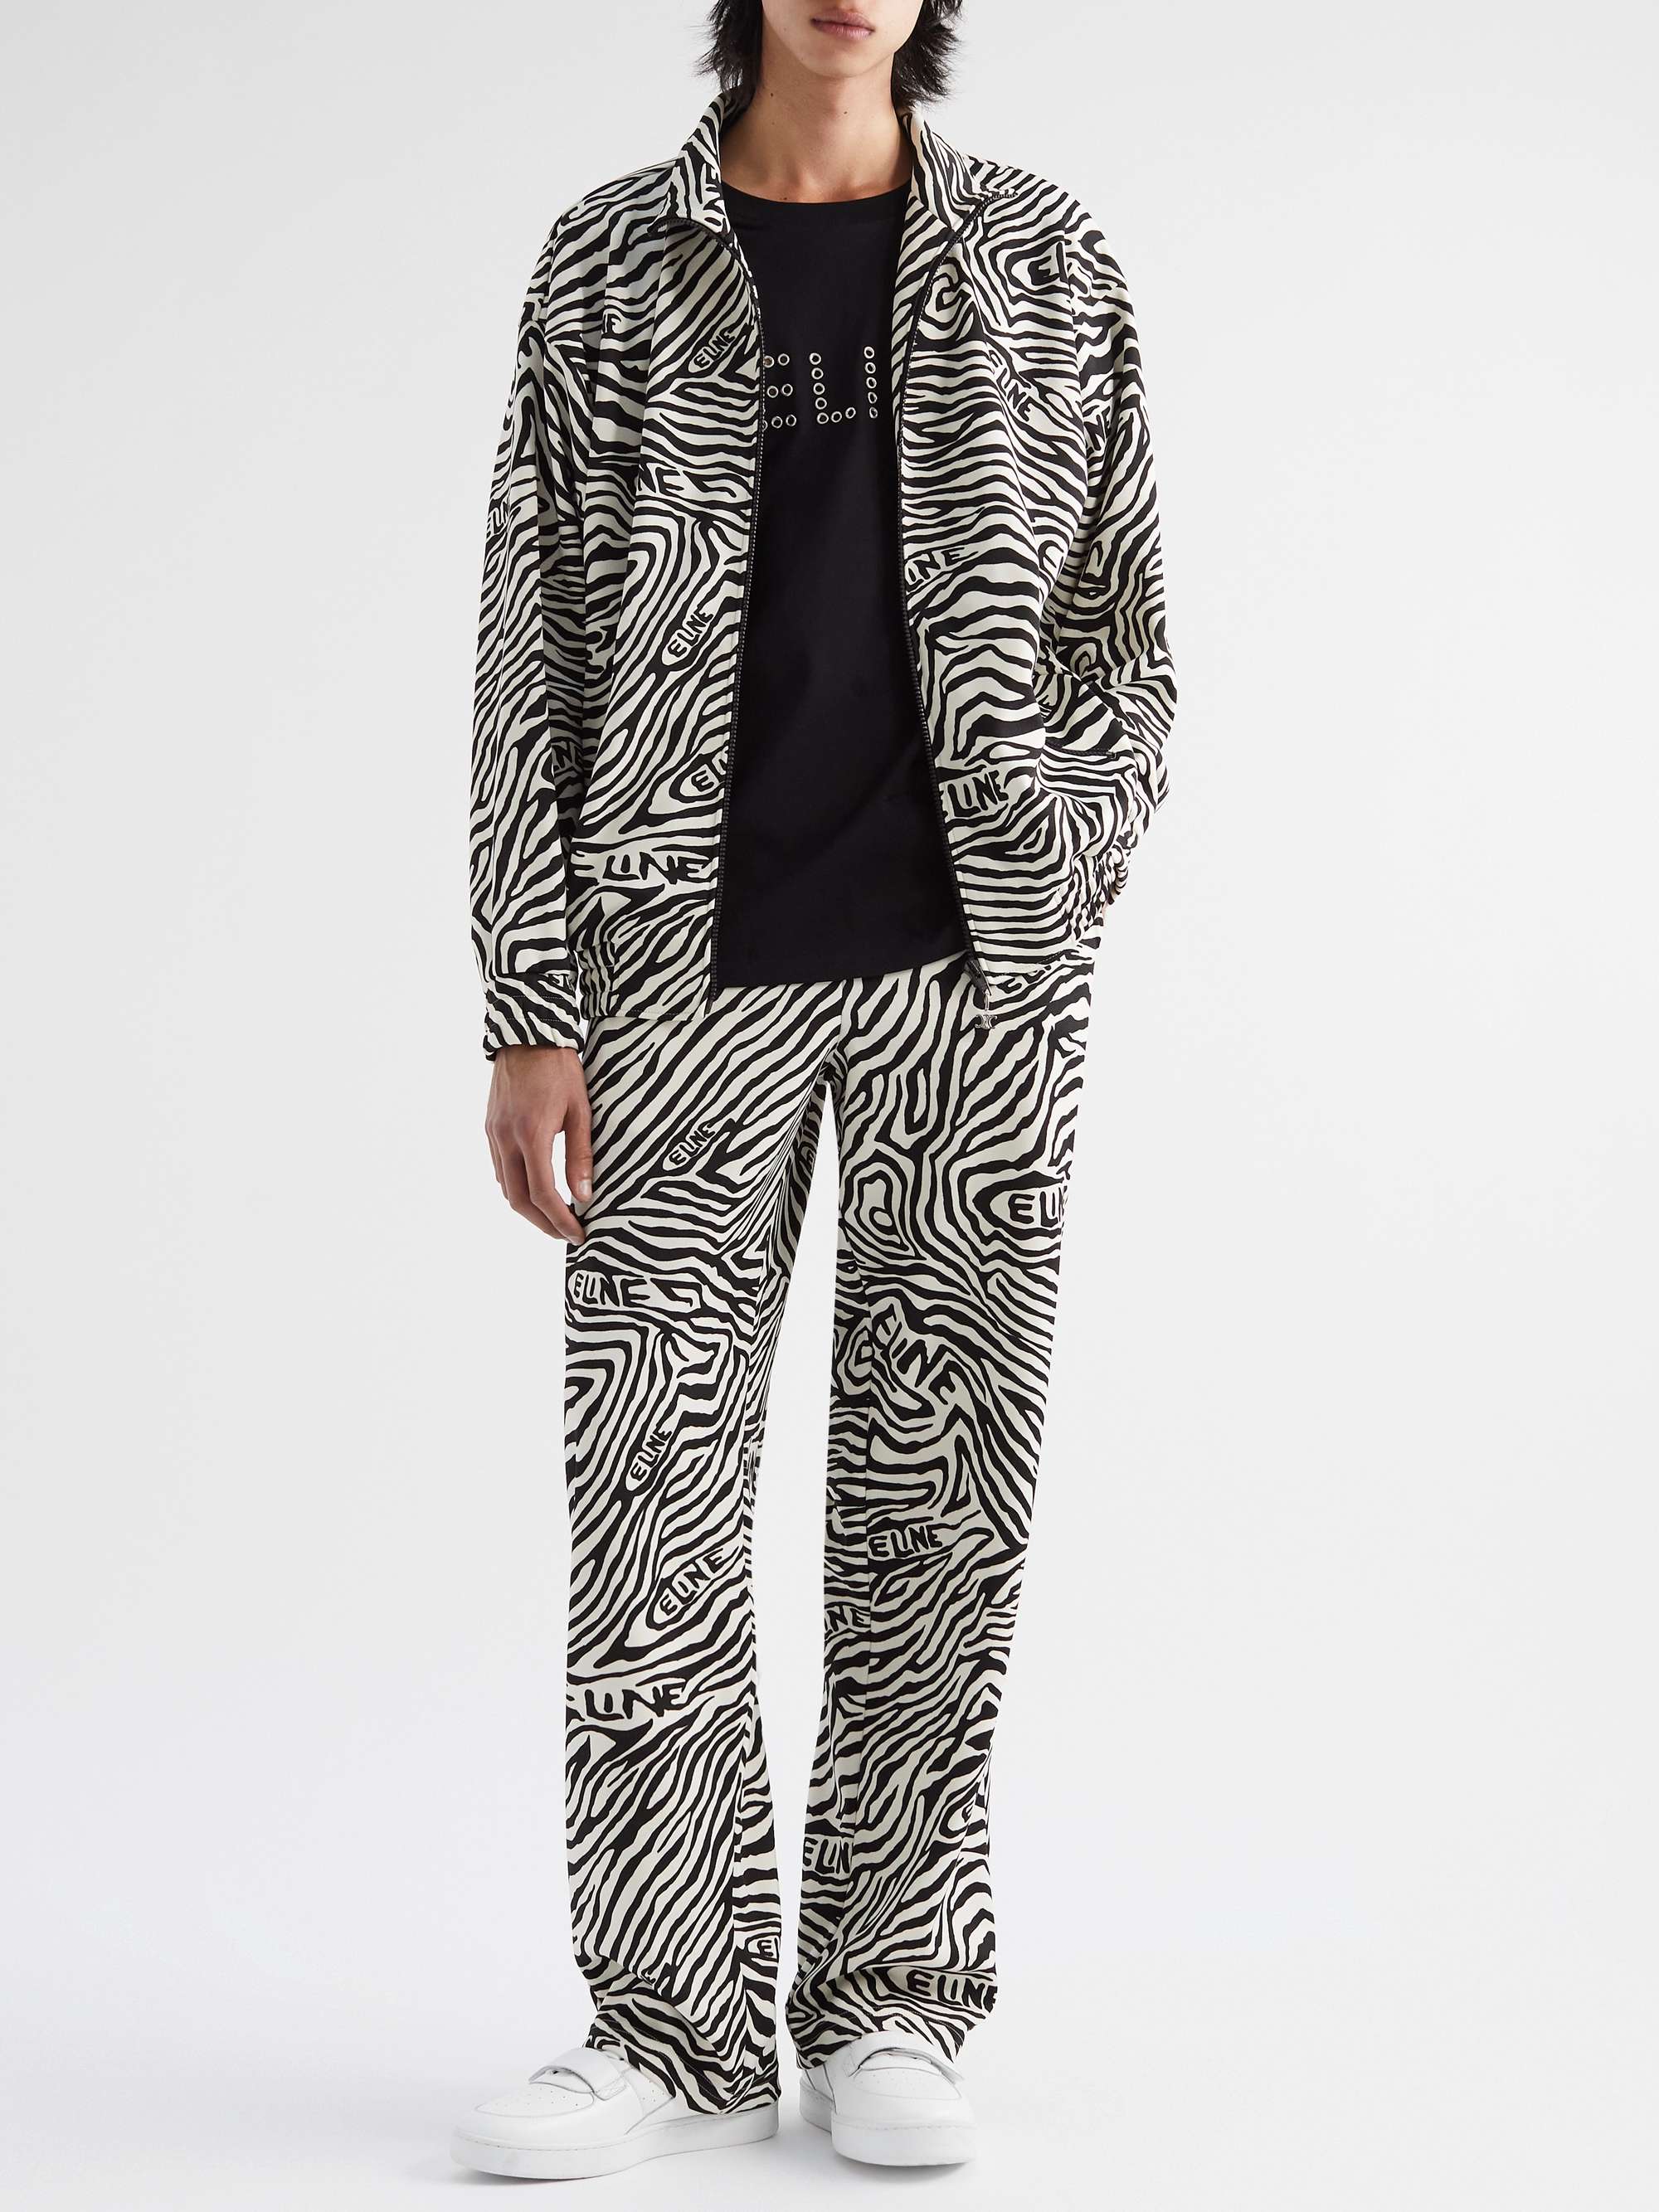 CELINE HOMME Zebra-Print Jersey Zip-Up Sweatshirt